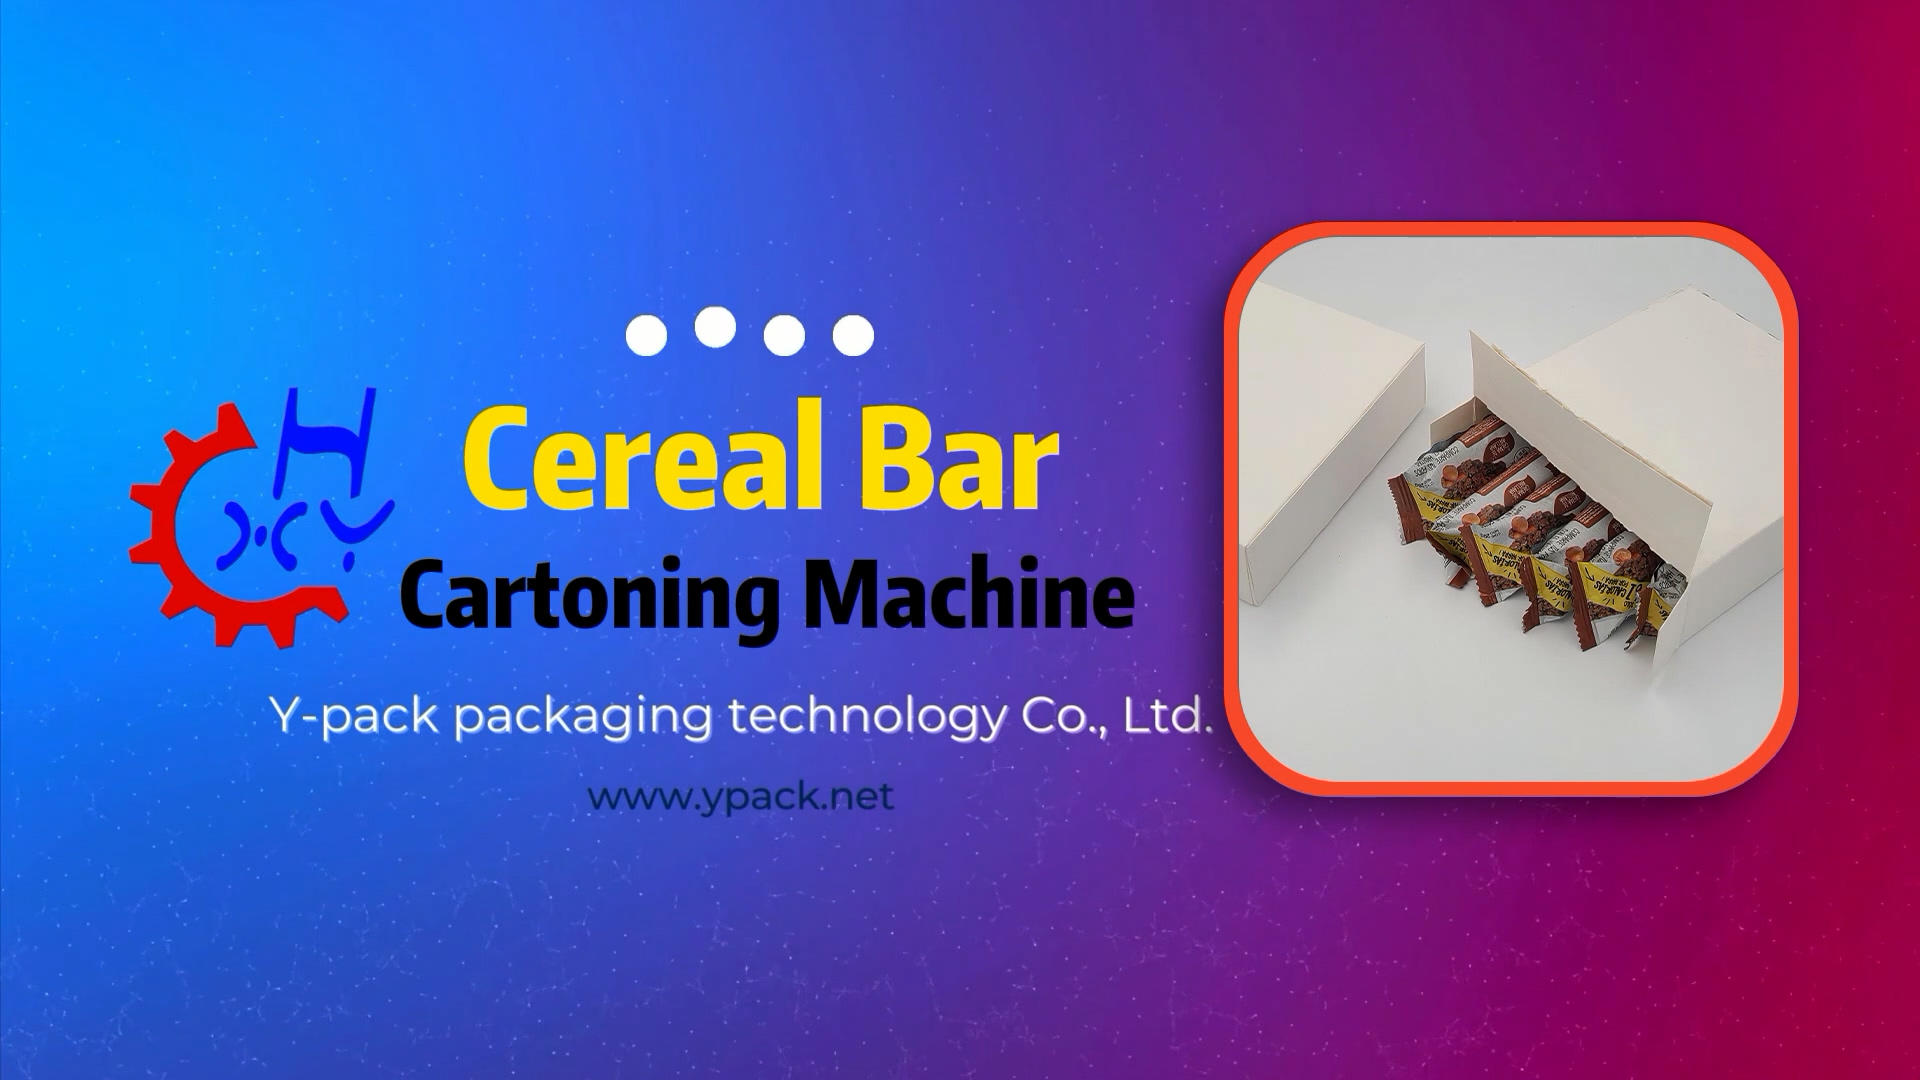 Cereal bar cartoning machine